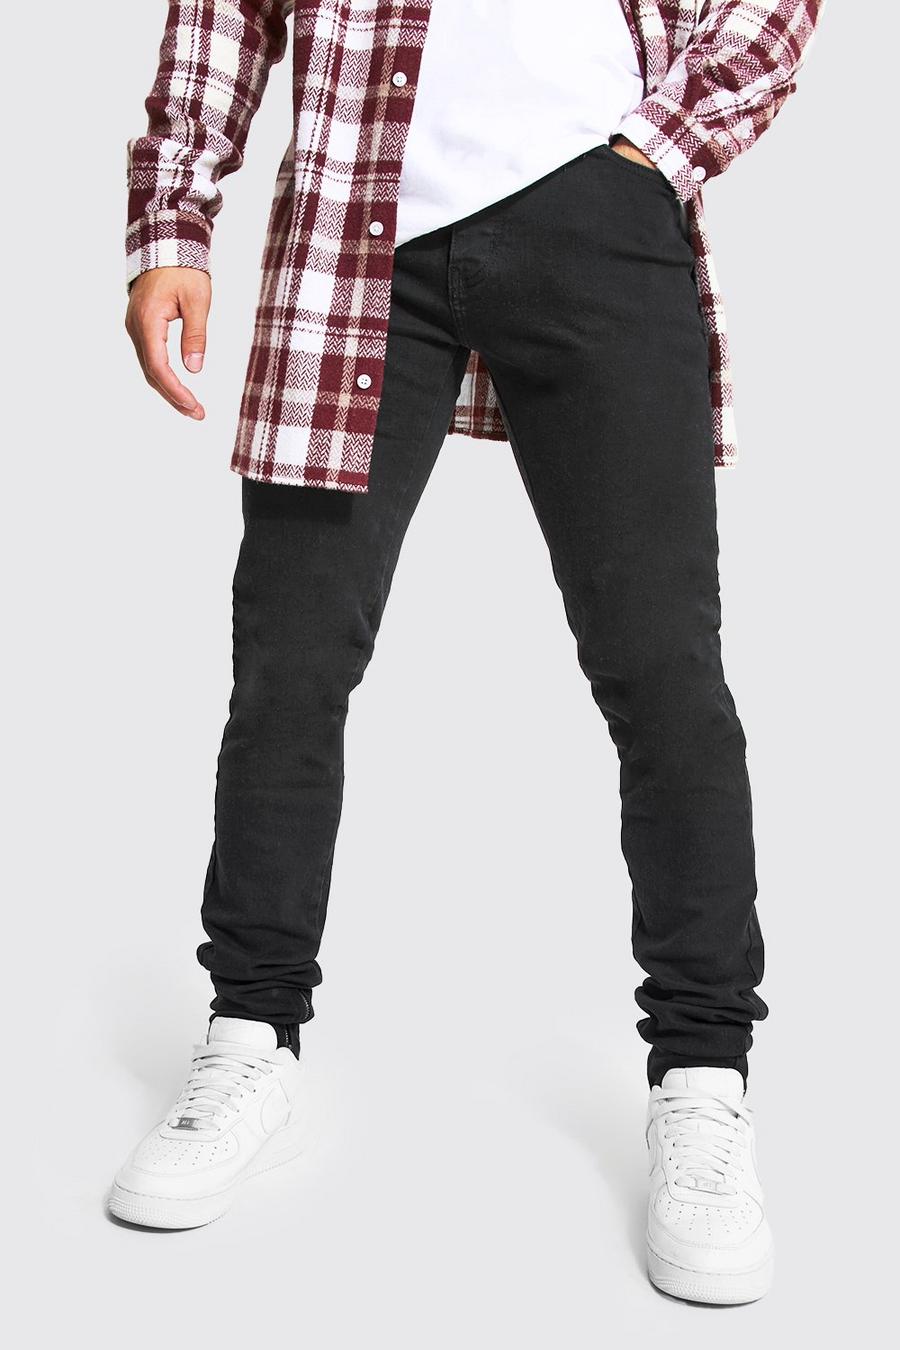 שחור אמיתי ג'ינס סקיני נערם עם רוכסנים בקרסול